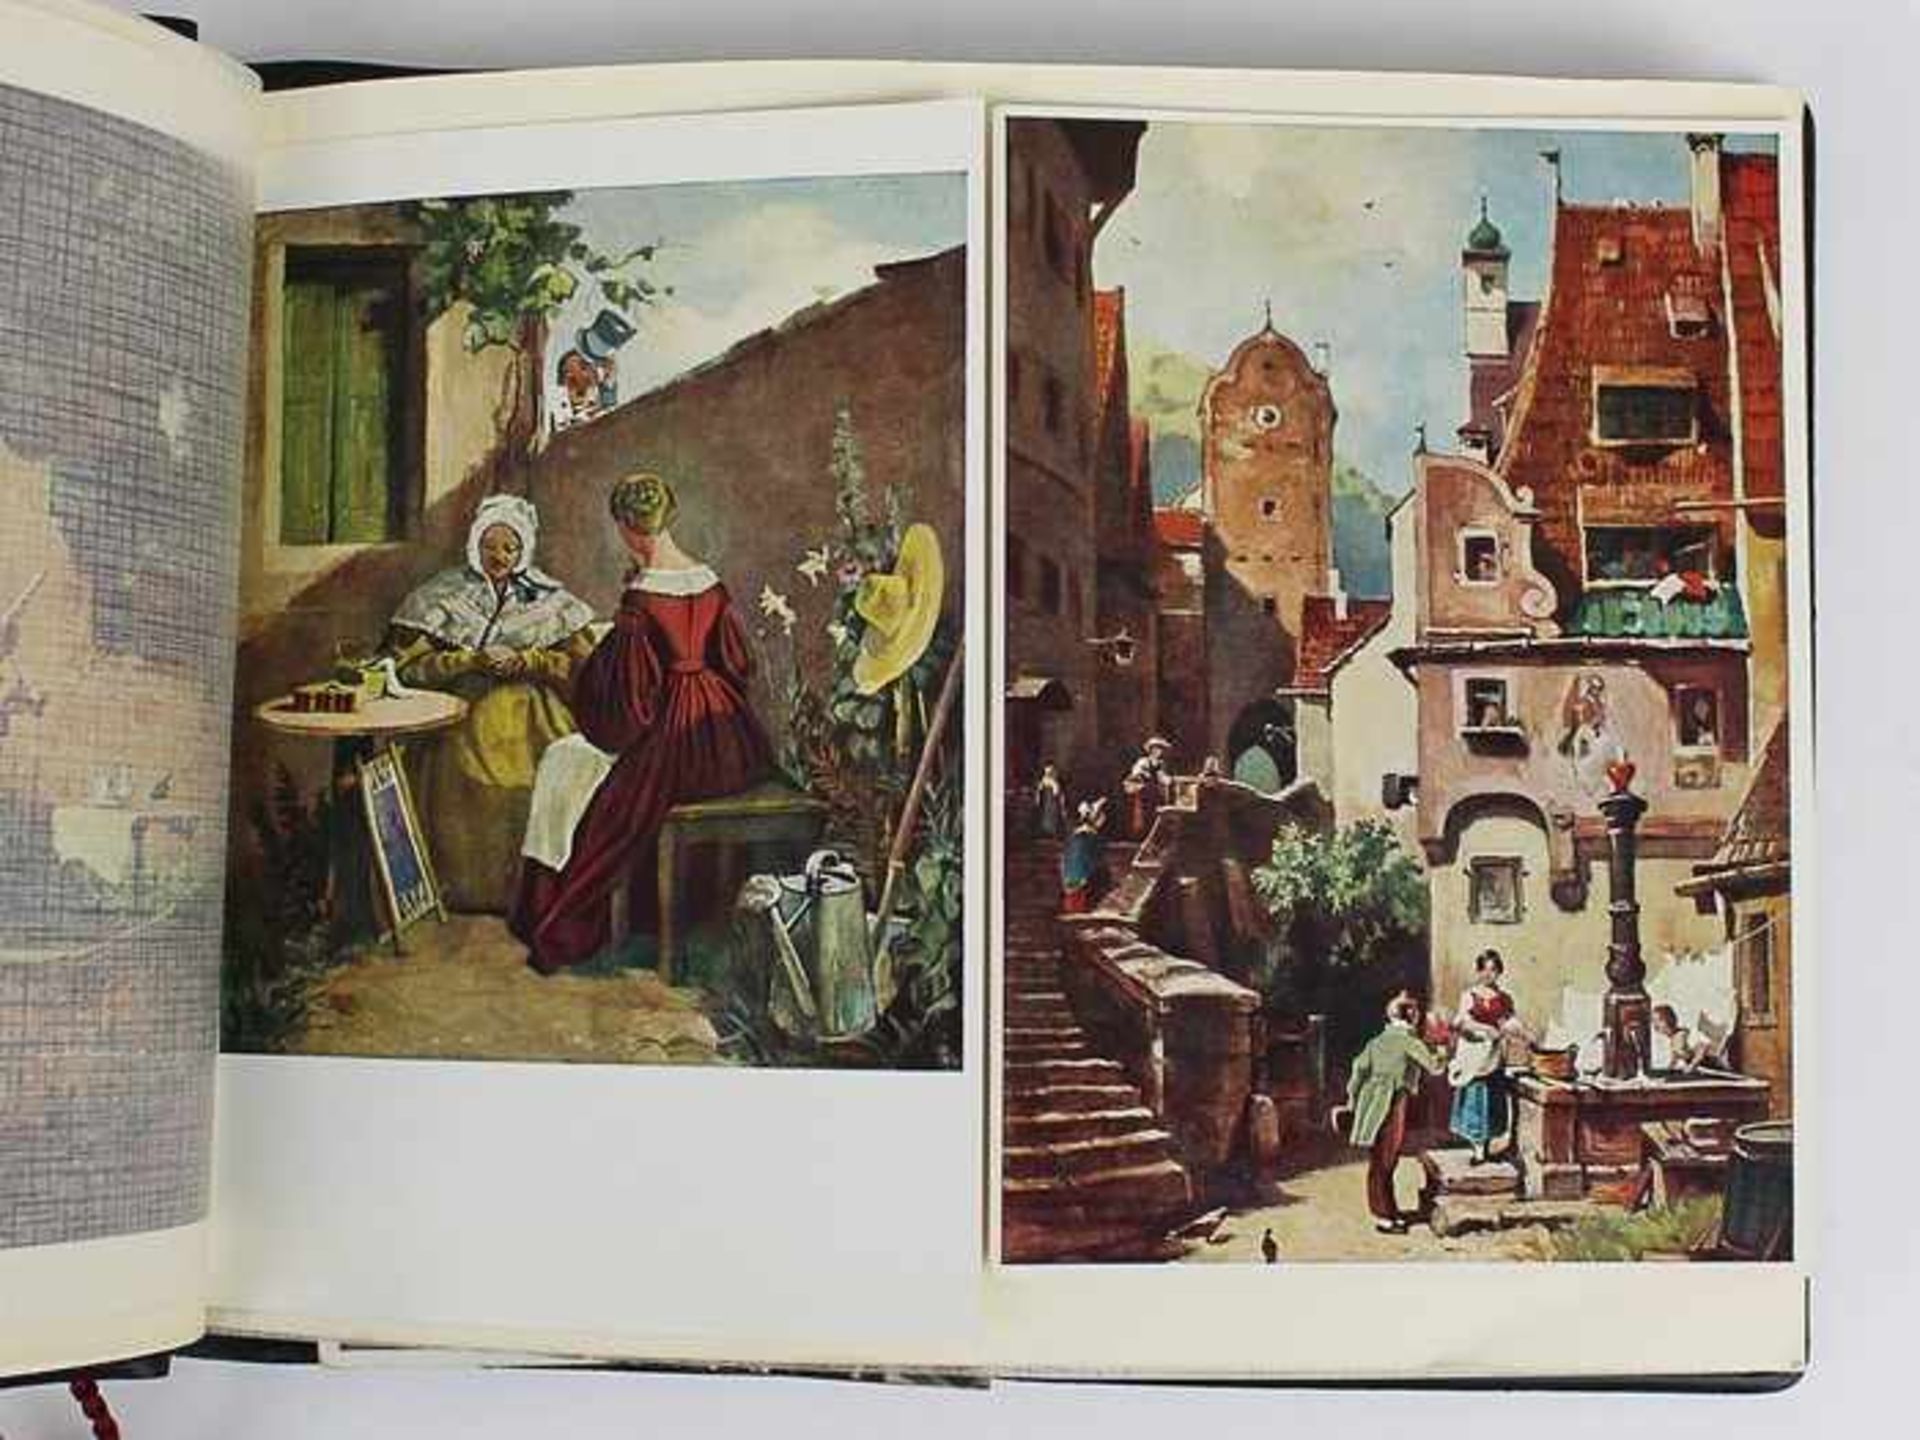 Postkartenalbenab 1930-1970, 74 St., s/w u. farbig lithogr. viele Künstlerkarten, in 2 Alben, einige - Bild 4 aus 4